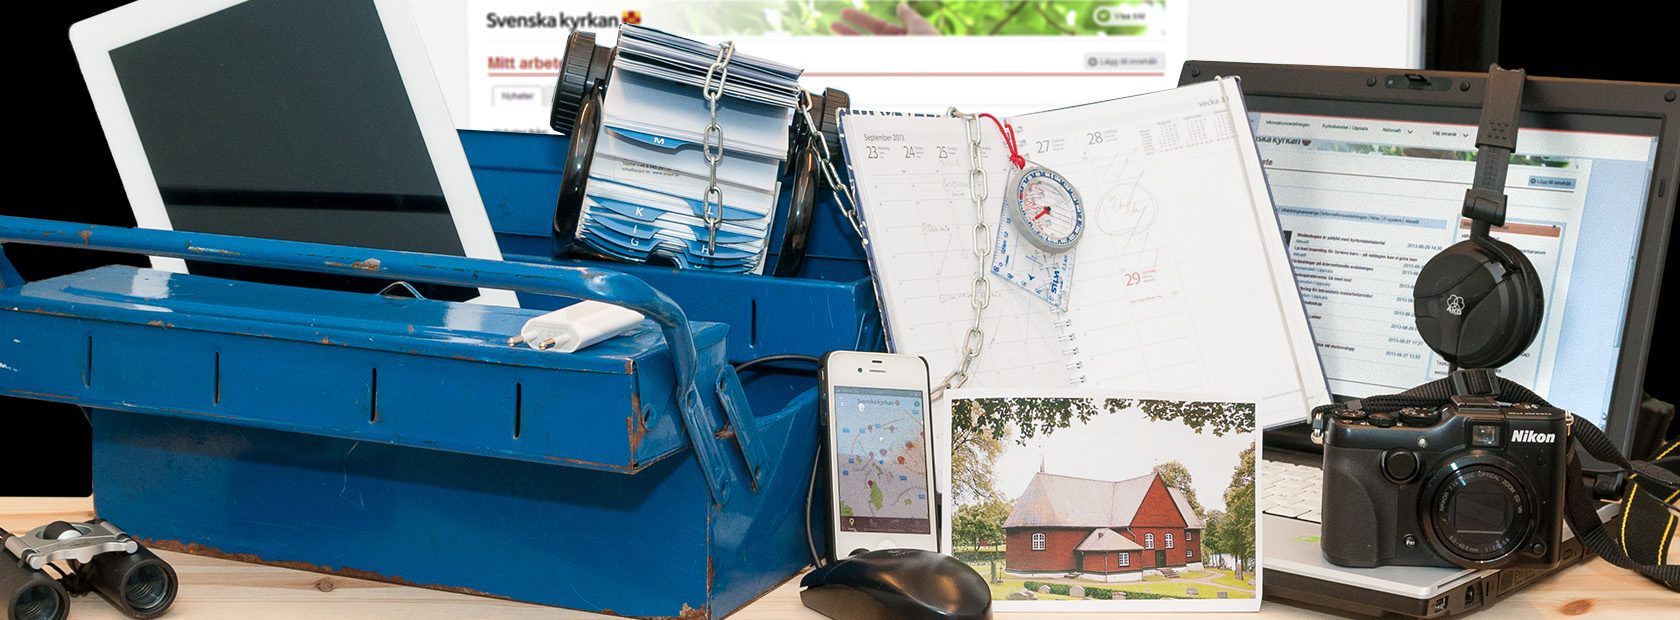 En blå verktygslåda med kikare, telefon, kamera, kompass och bilder på kyrkor.